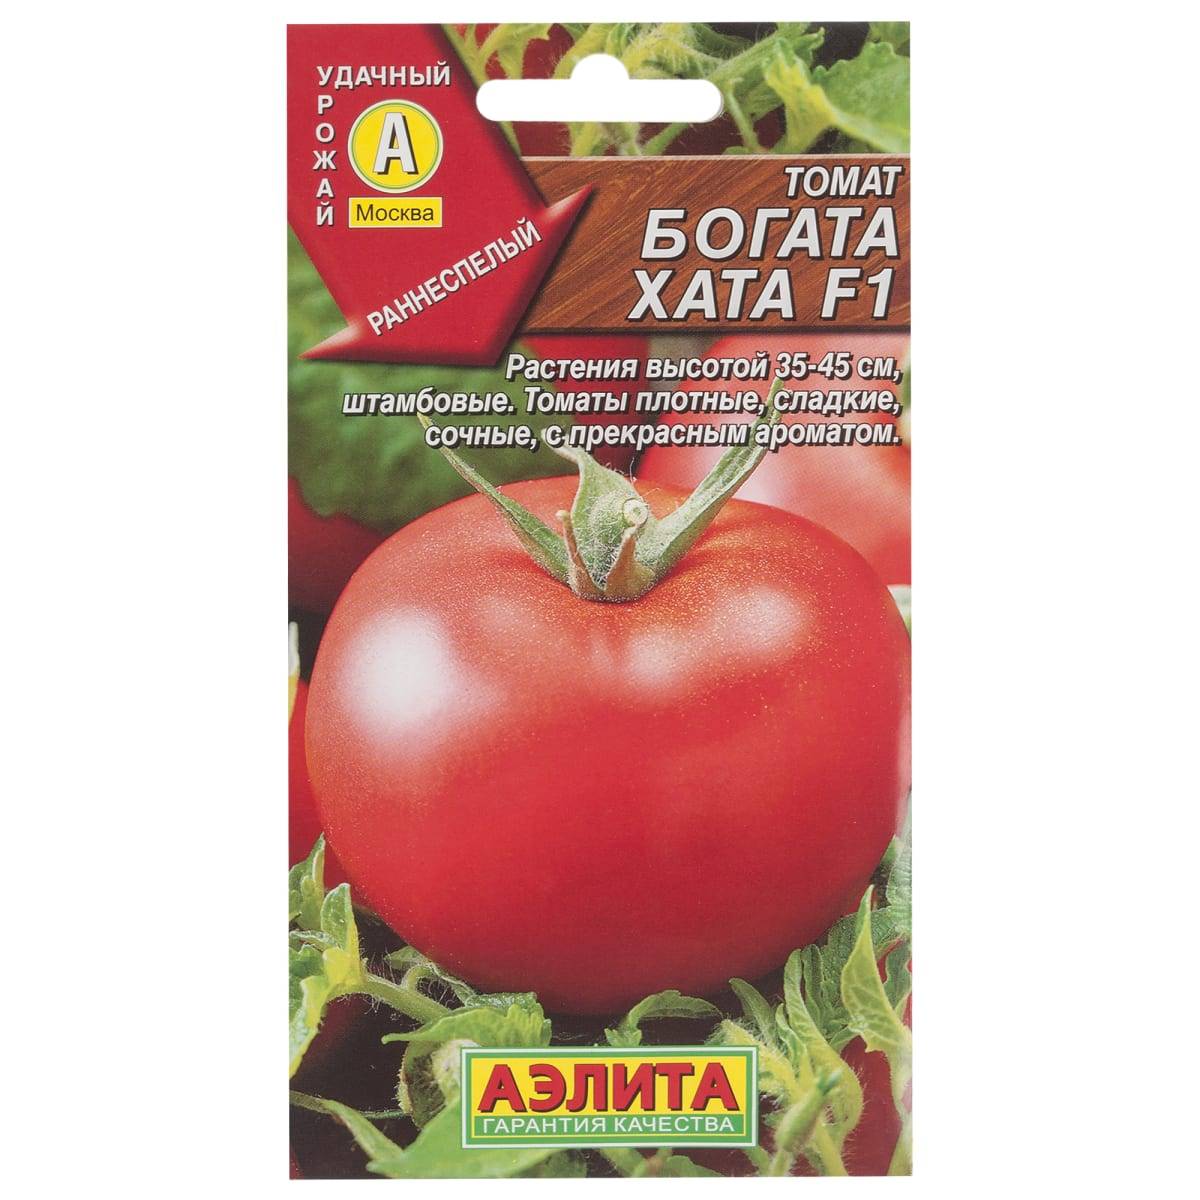 Выращивание томата богата хата